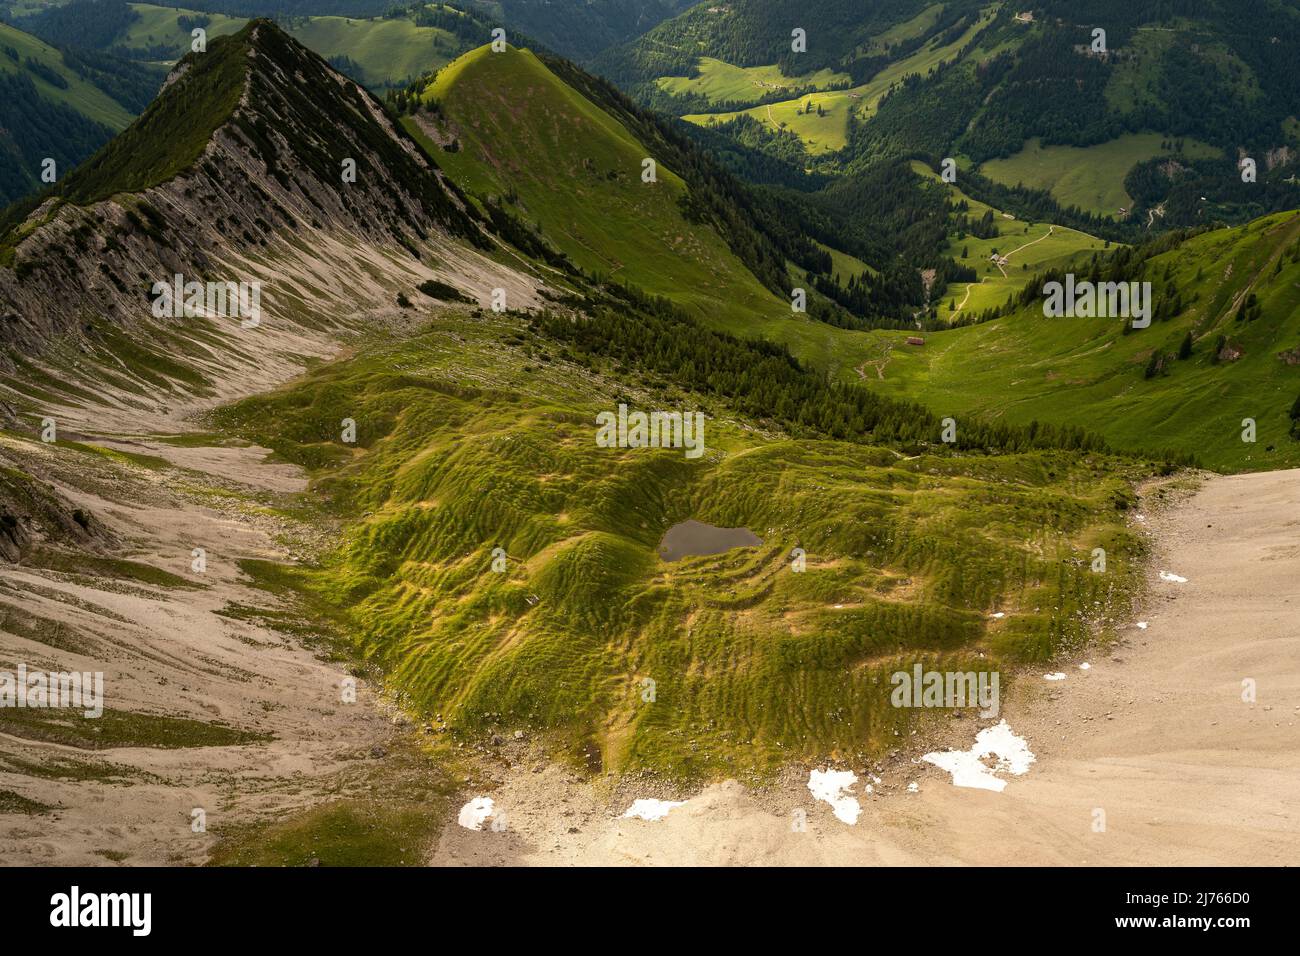 Kar unterhalb der Mondscheinspitze, auch Montscheinspitze geschrieben, im Karwendel. Ein kleiner Pool aus Wasser und Grünflächen bieten ein kleines gemütliches Tal ohne Bäume. Stockfoto